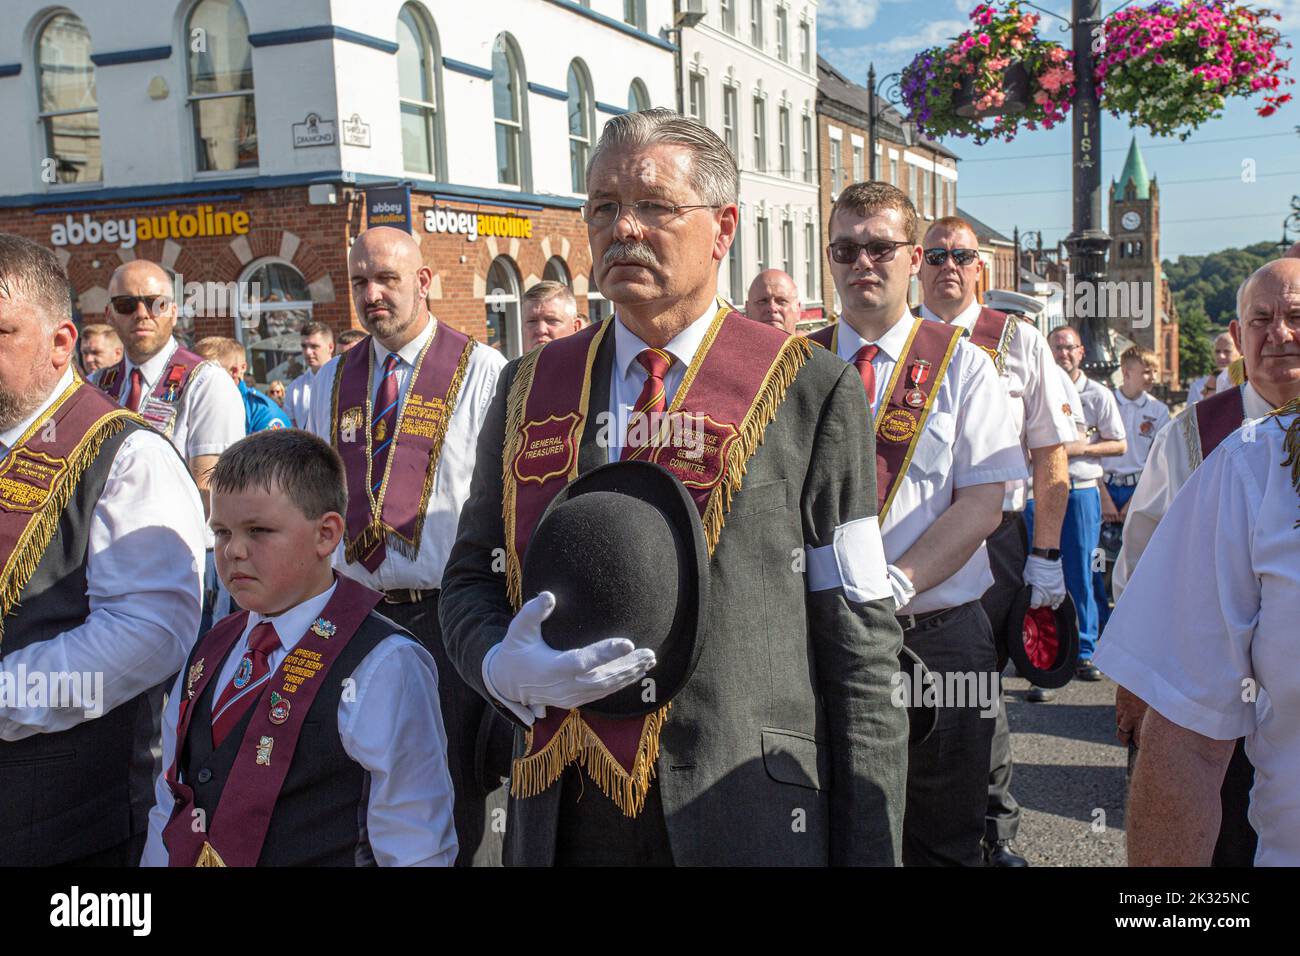 David Hoey dei ragazzi apprendisti di Derry ha partecipato alla parata annuale di Relief of Derry, la più grande parata di ordini leali che si è tenuta in Irlanda del Nord. Foto Stock